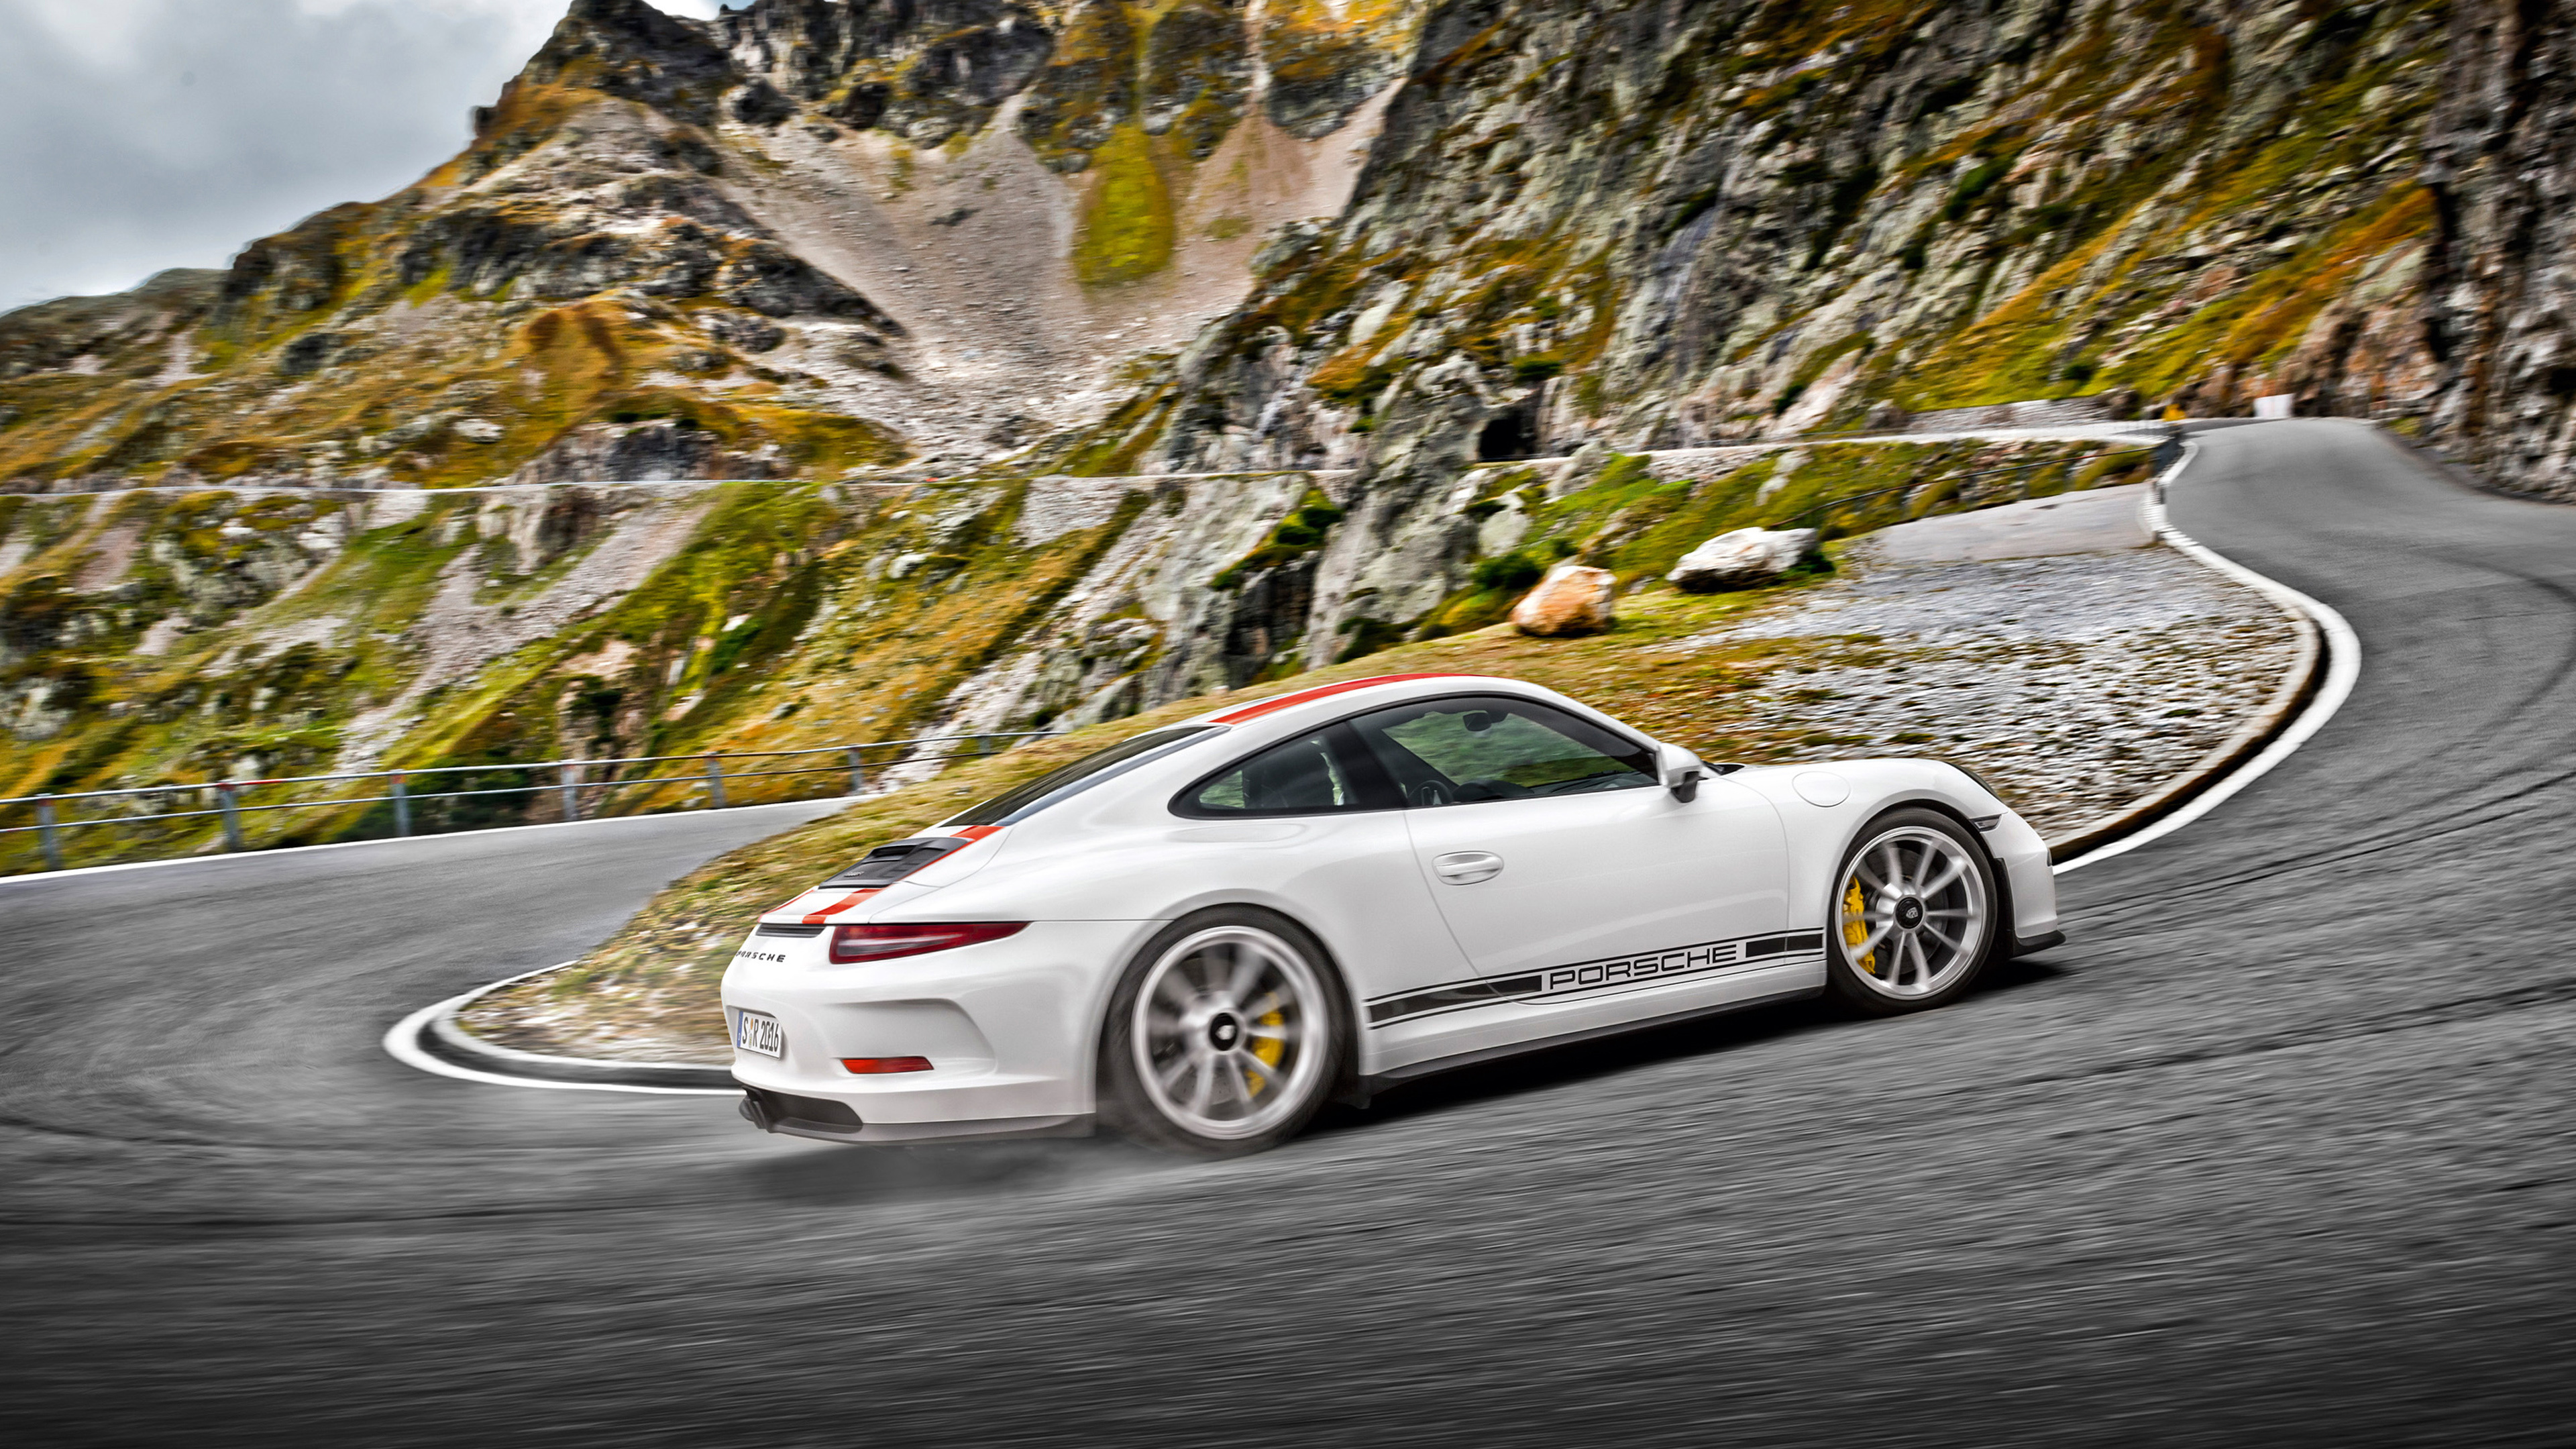 Porsche 911 Blanche Sur Route. Wallpaper in 3840x2160 Resolution